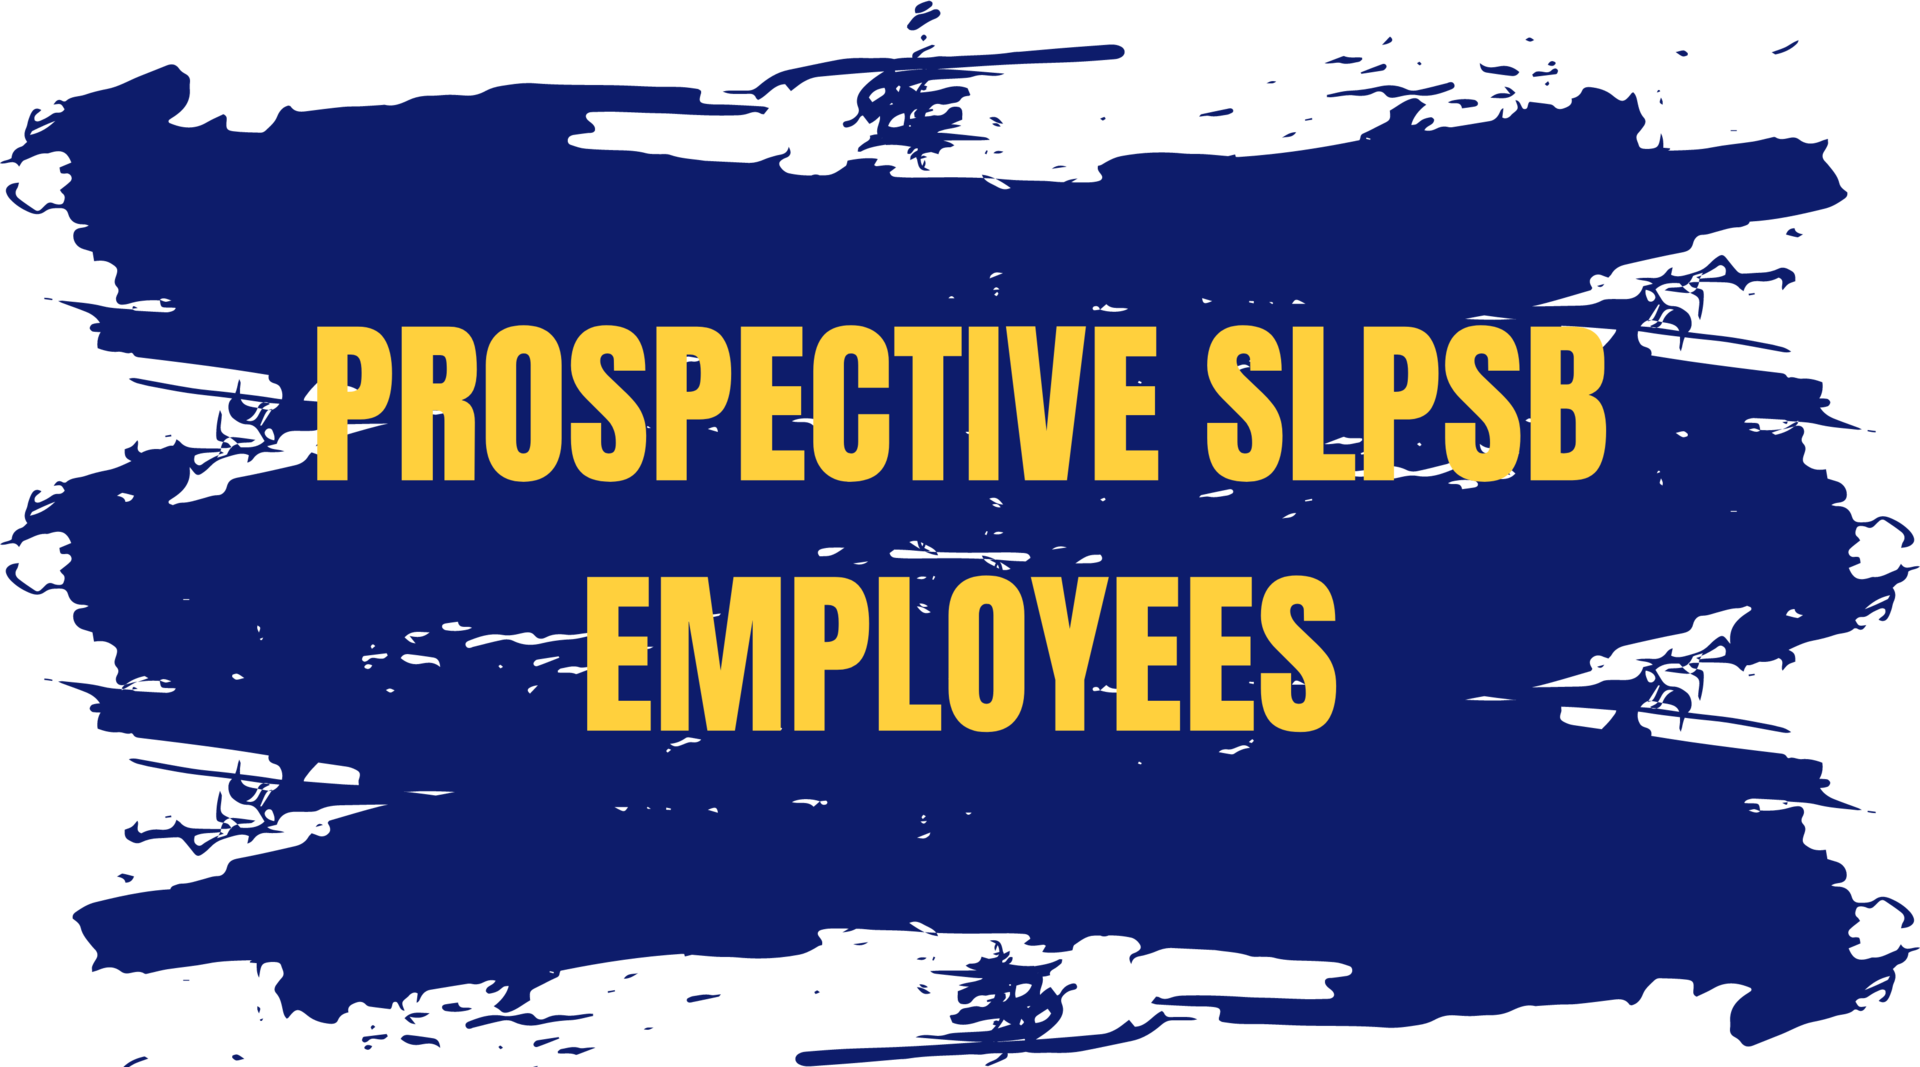 Prospective SLPSB Employees